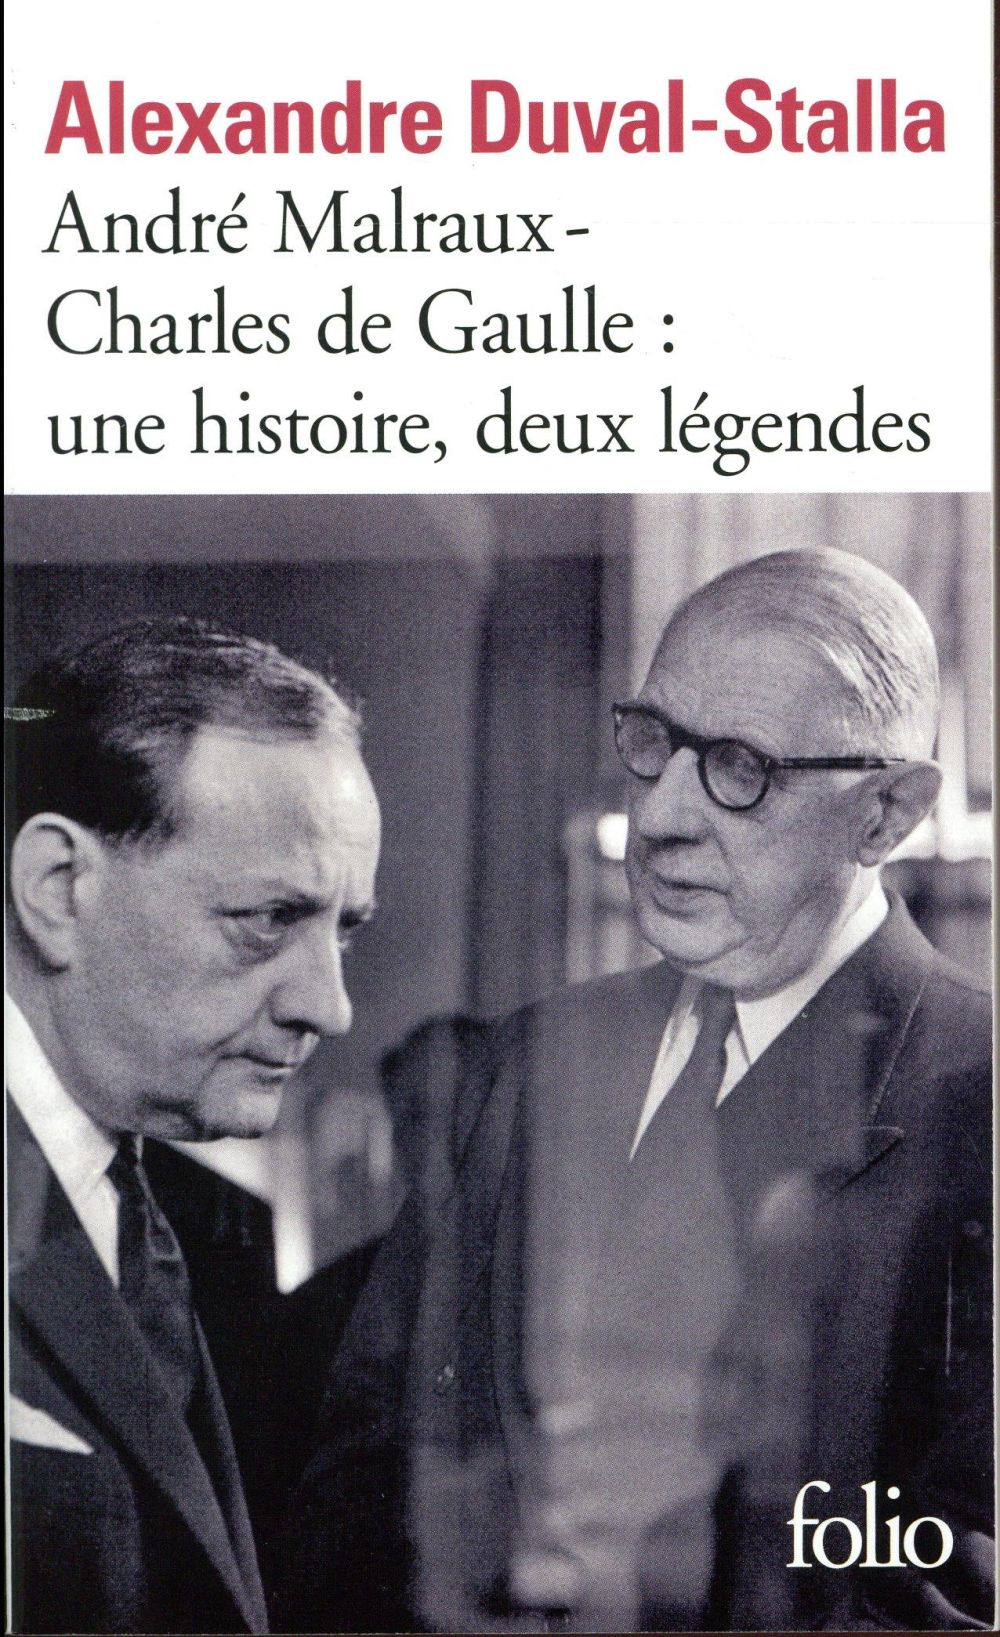 ANDRE MALRAUX - CHARLES DE GAULLE, UNE HISTOIRE, DEUX LEGENDES - BIOGRAPHIE CROISEE